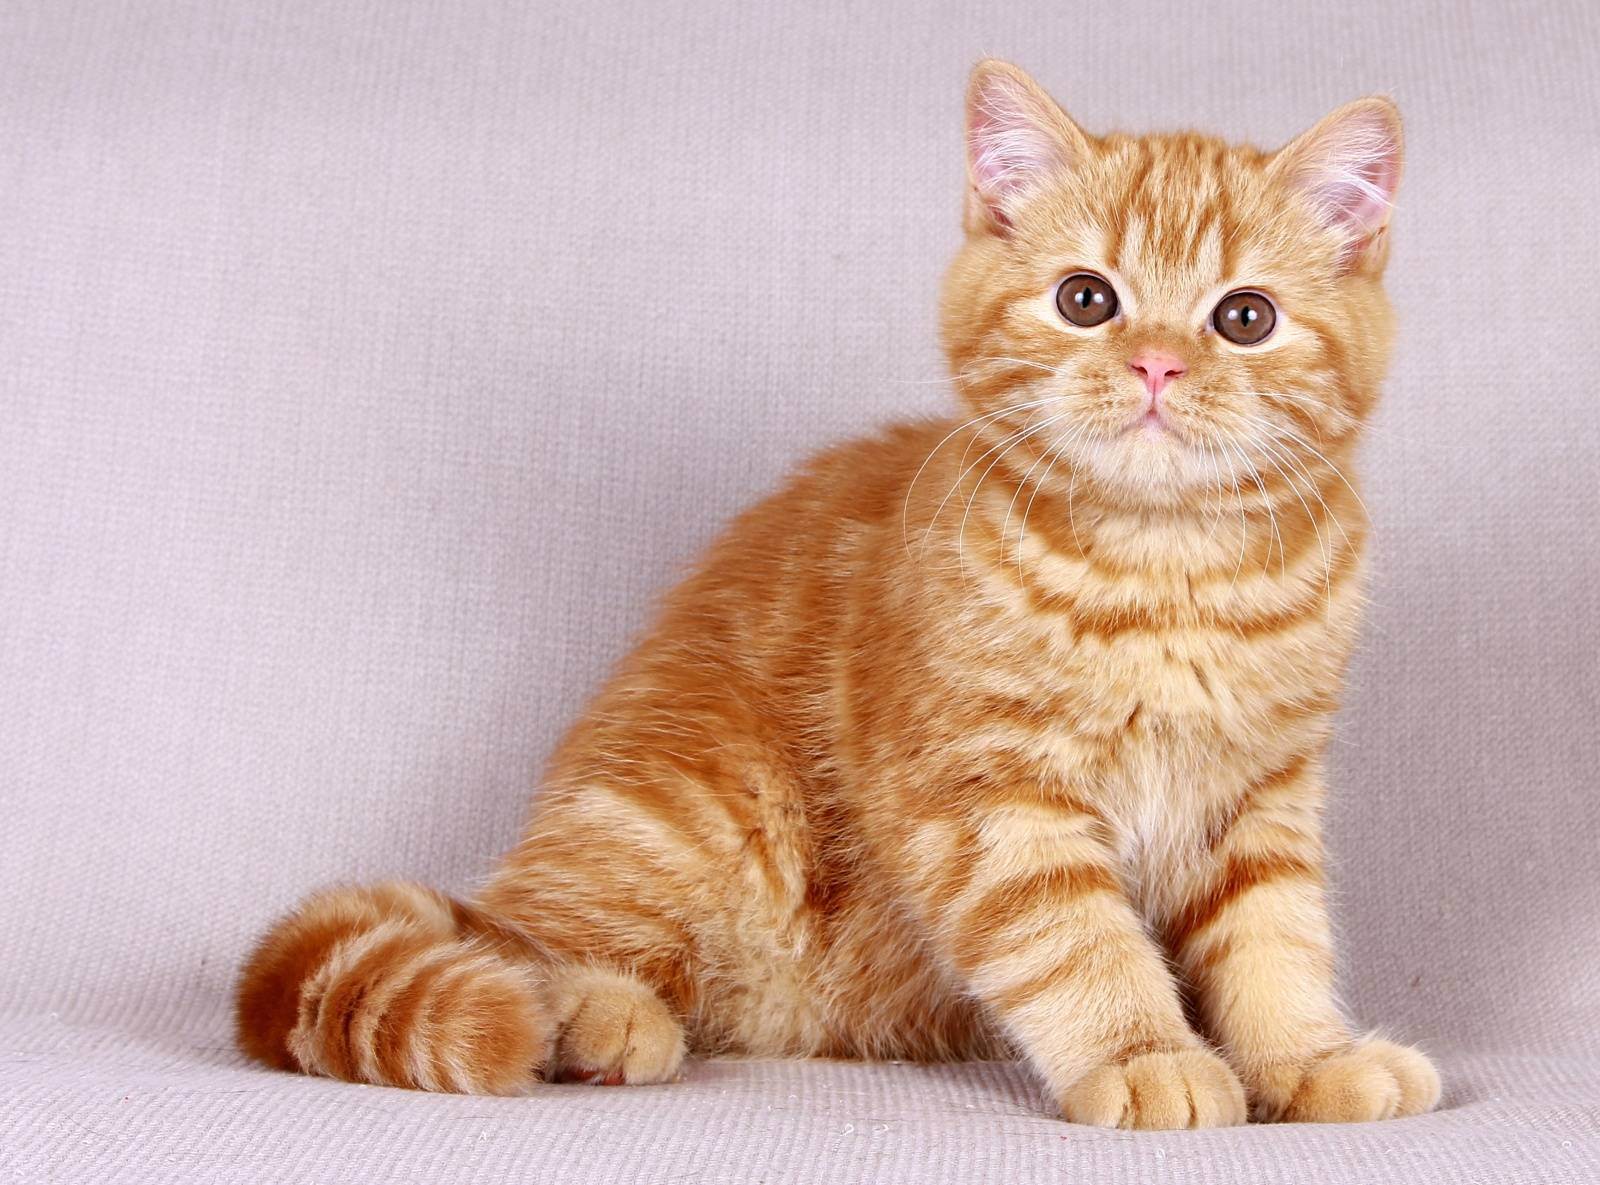 Таблица окрасов британских кошек: белый, серебристый, полосатый